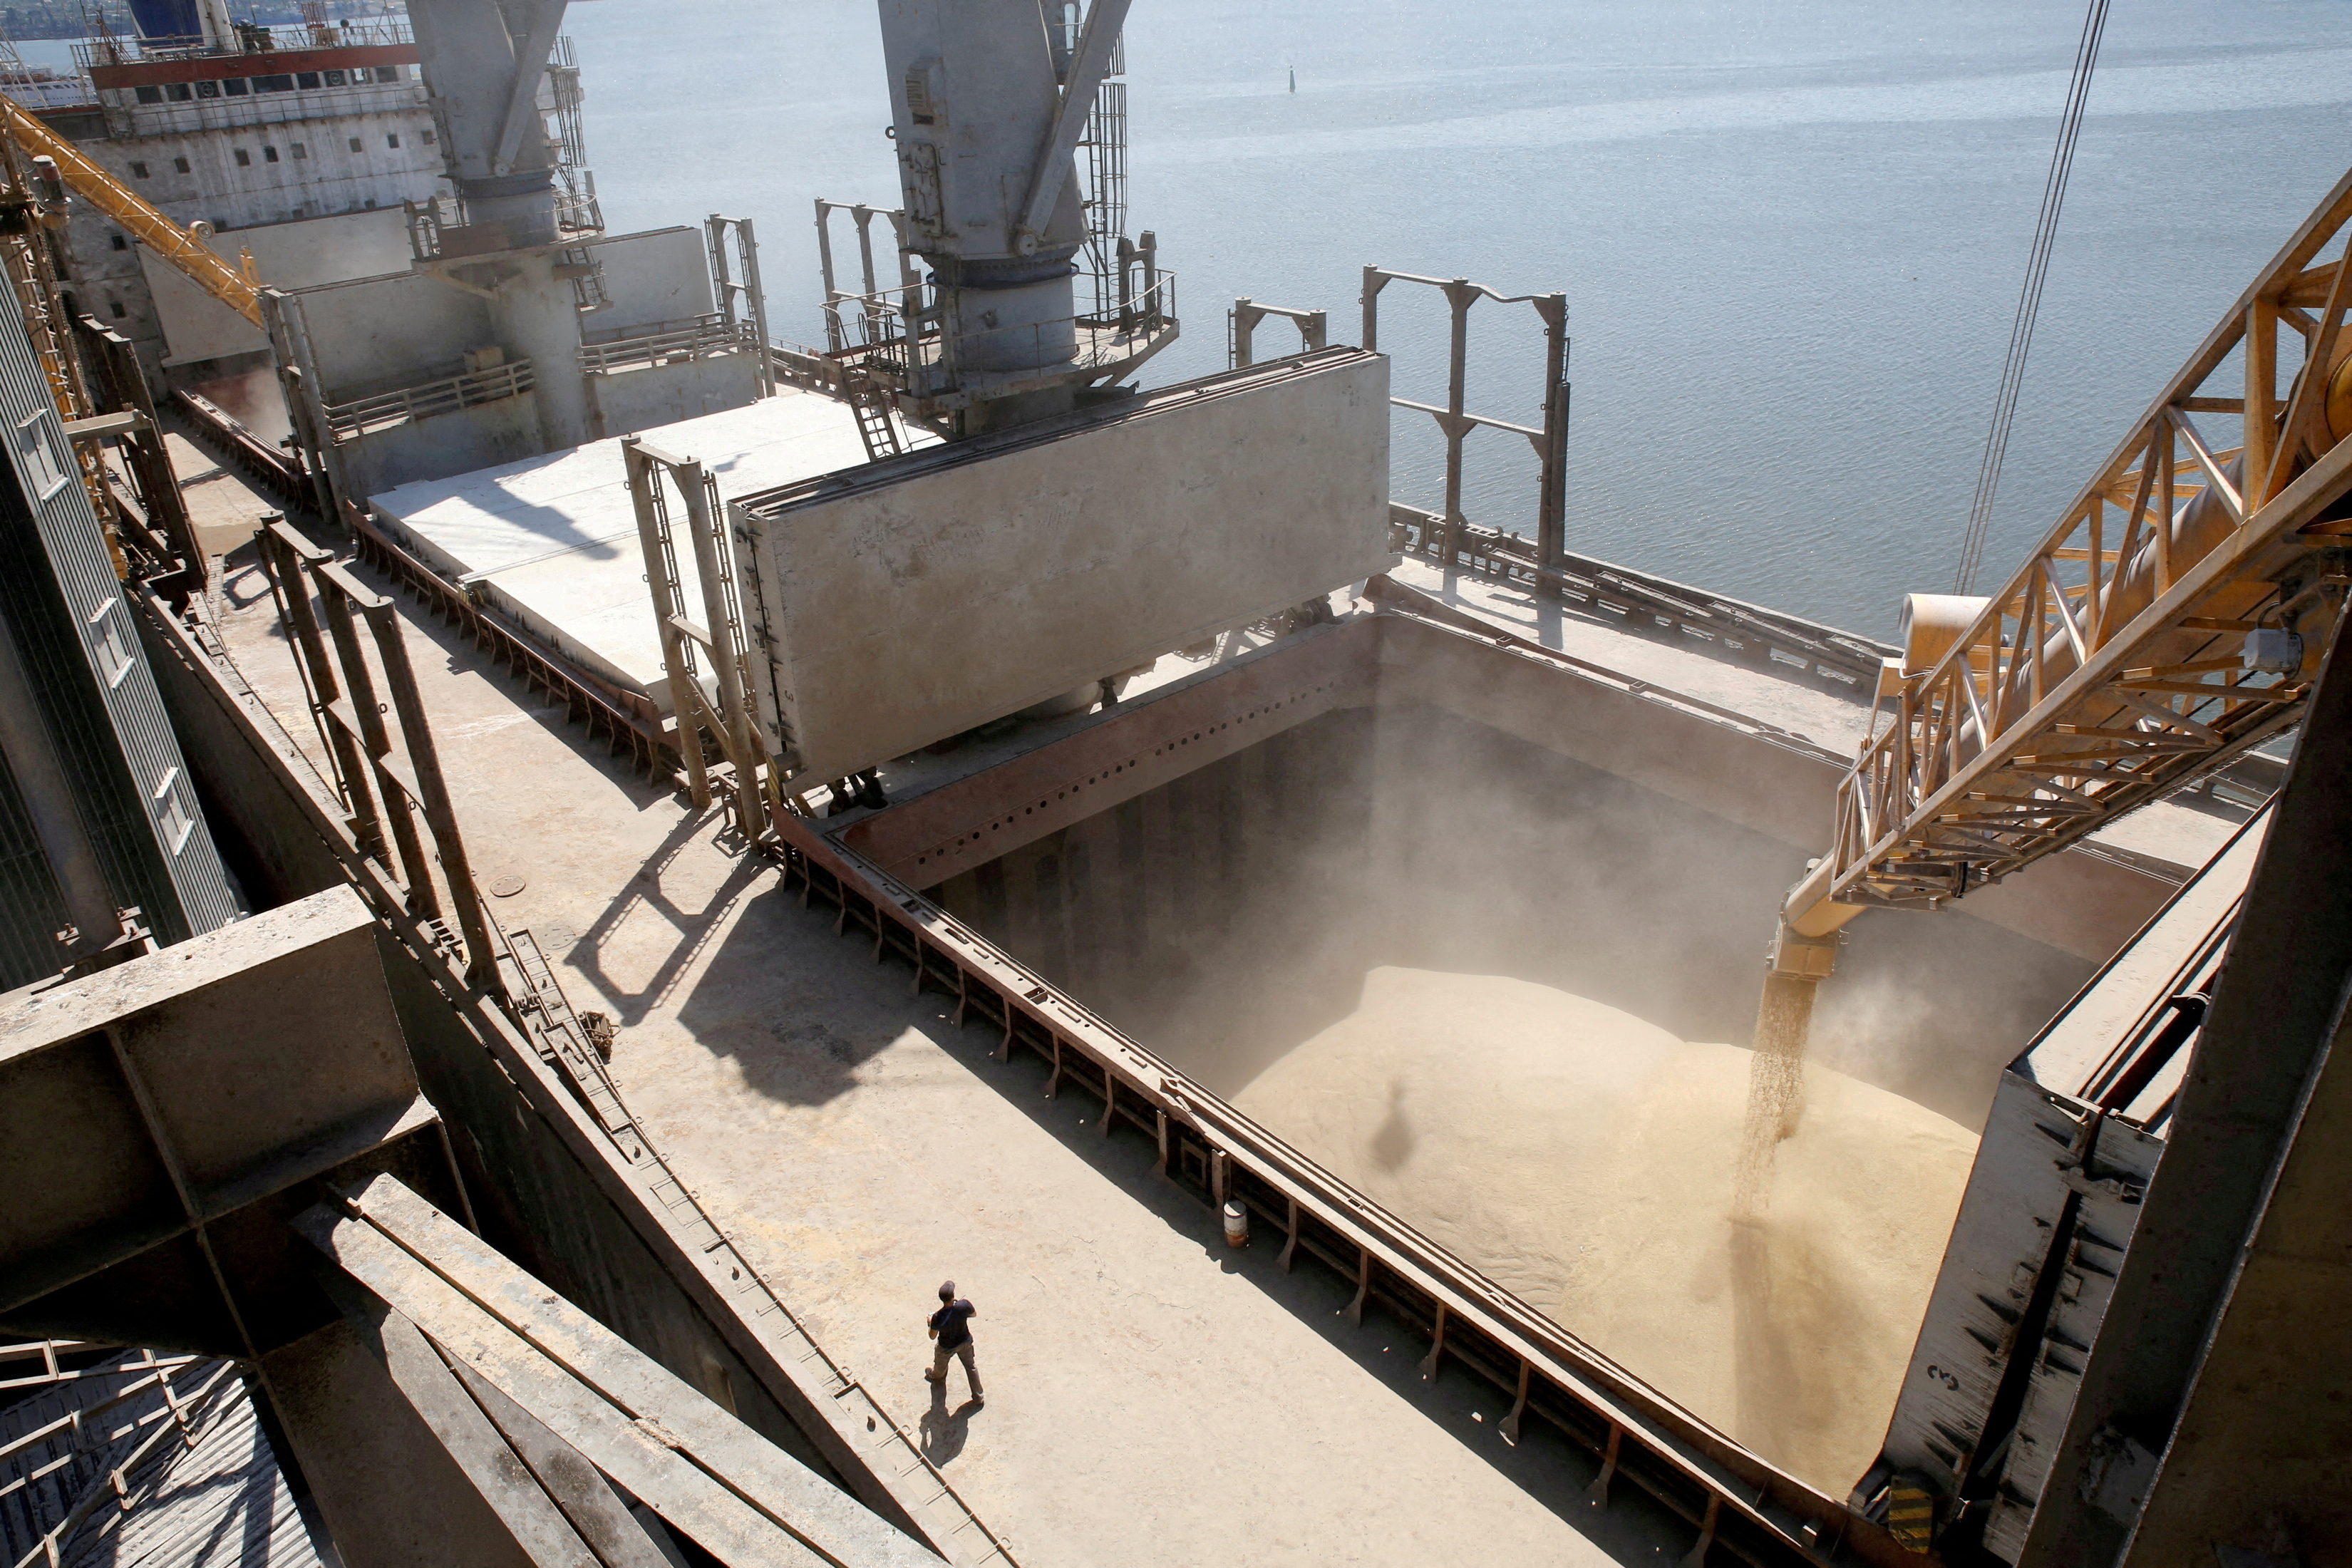 Un trabajador del astillero observa cómo se vierte mecánicamente el grano de cebada en un barco de 40.000 toneladas en la terminal de envíos de un exportador agrícola ucraniano en la ciudad de Nikolaev, al sur de Ucrania (REUTERS/Vincent Mundy)